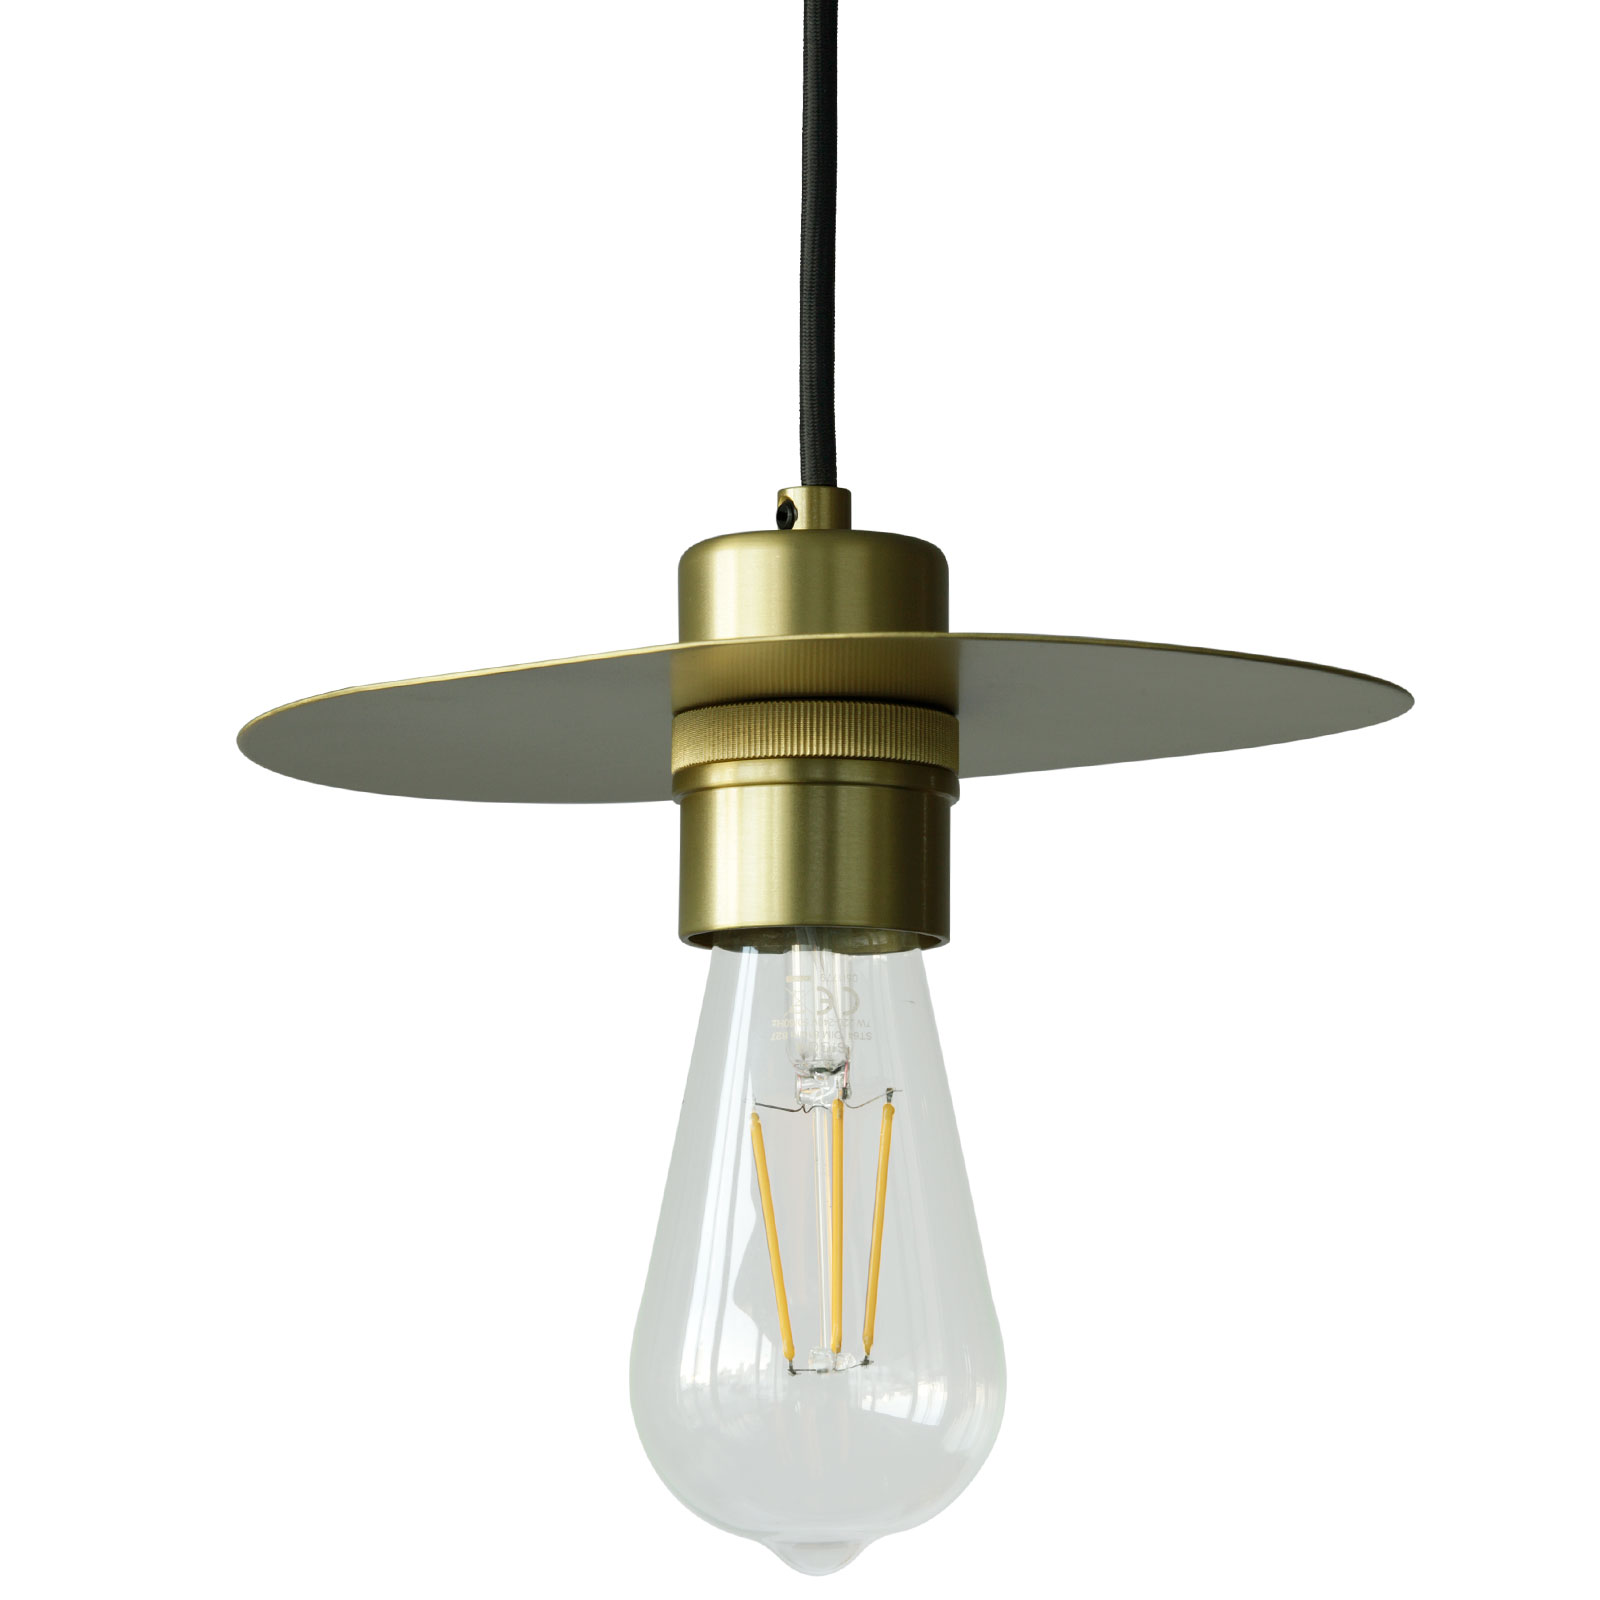 Elegante, einfache Reflektor-Pendelleuchte aus Messing: Elegant einfache Reflektor-Pendelleuchte mit „Edison“-Birne, hier in Messing satiniert, schwarzes Kabel